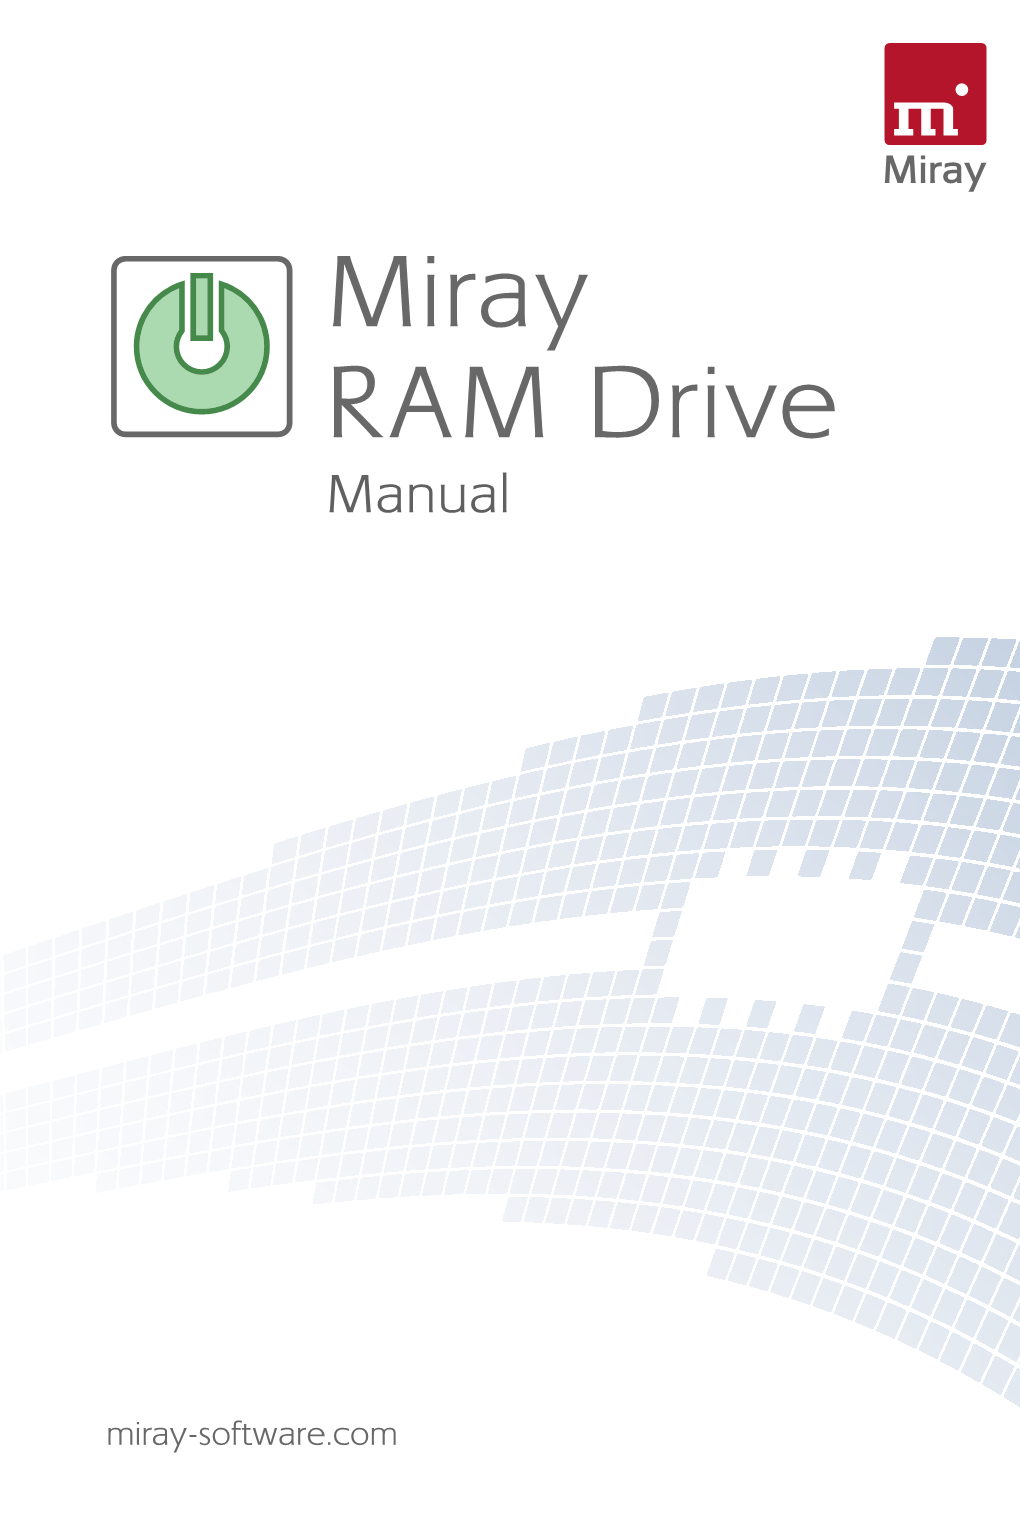 Miray RAM Drive Manual